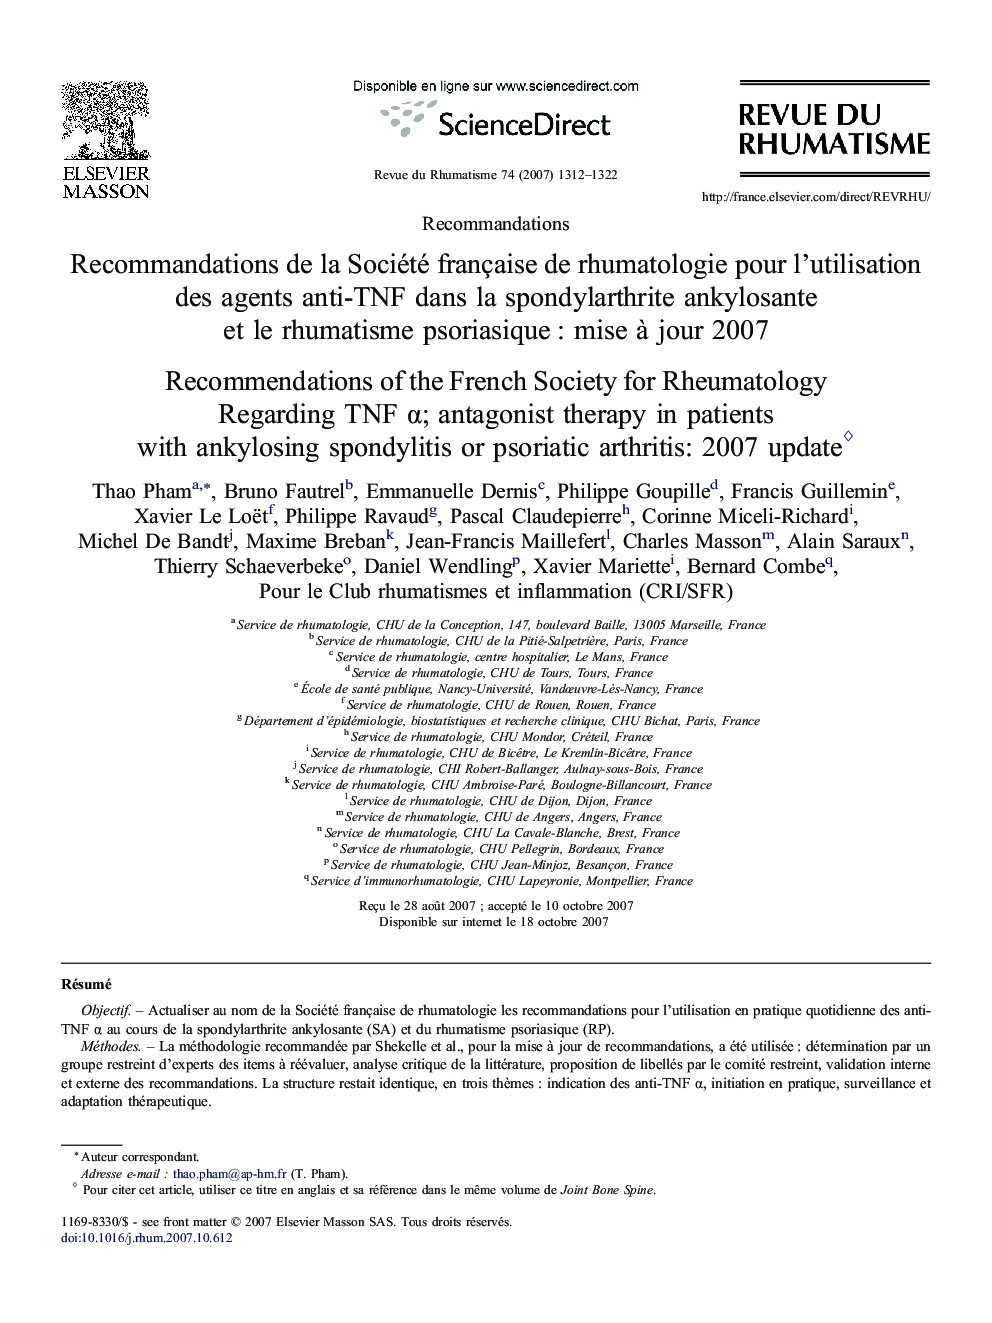 Recommandations de la Société française de rhumatologie pour l'utilisation des agents anti-TNF dans la spondylarthrite ankylosante et le rhumatisme psoriasique : mise à jour 2007